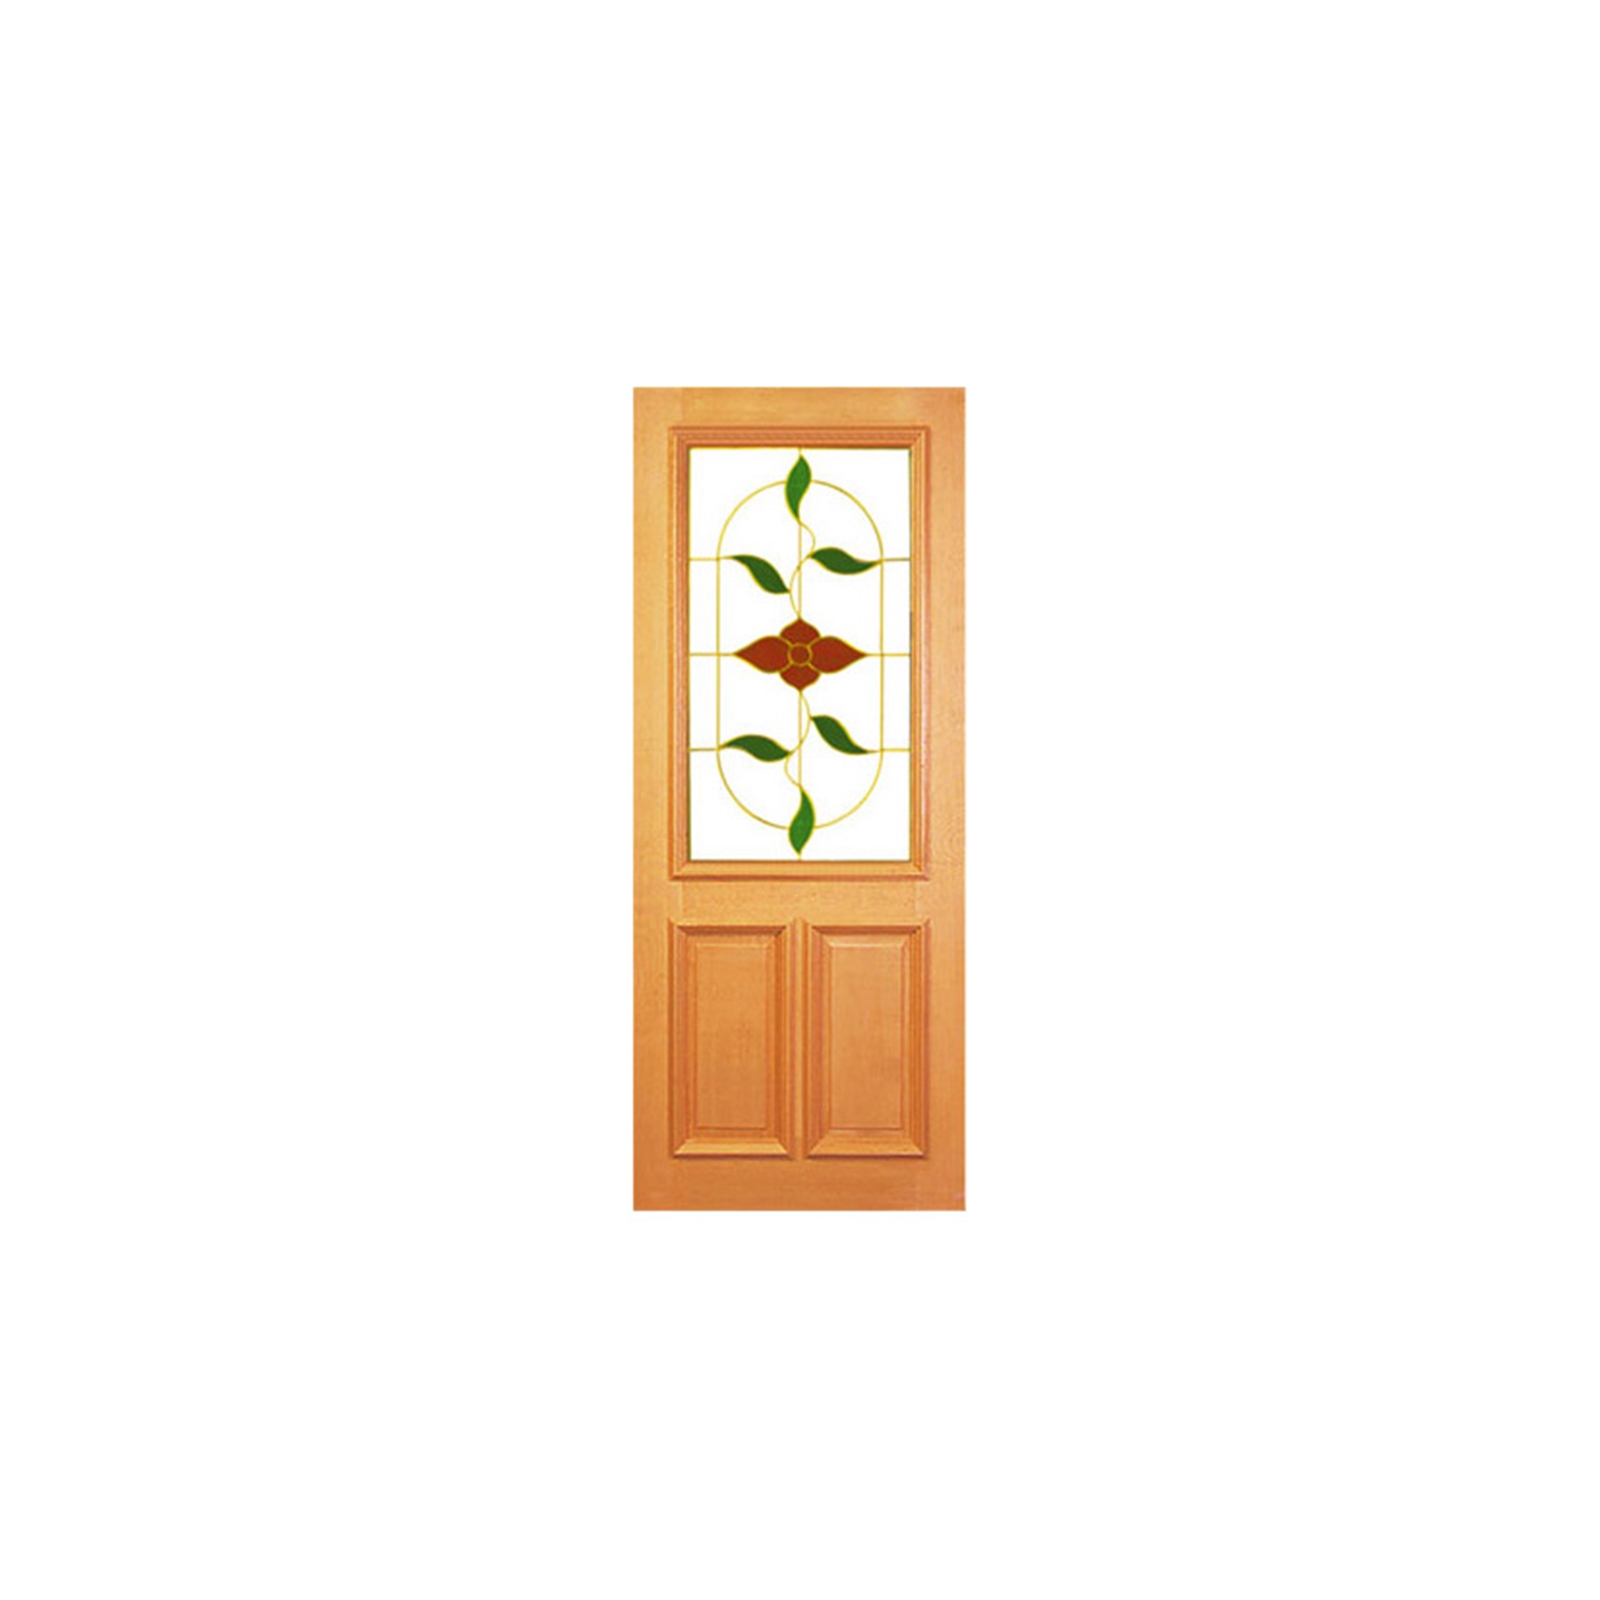 Woodcraft Doors 2040 x 820 x 40mm Red Leadlight Half Lite Entrance Door